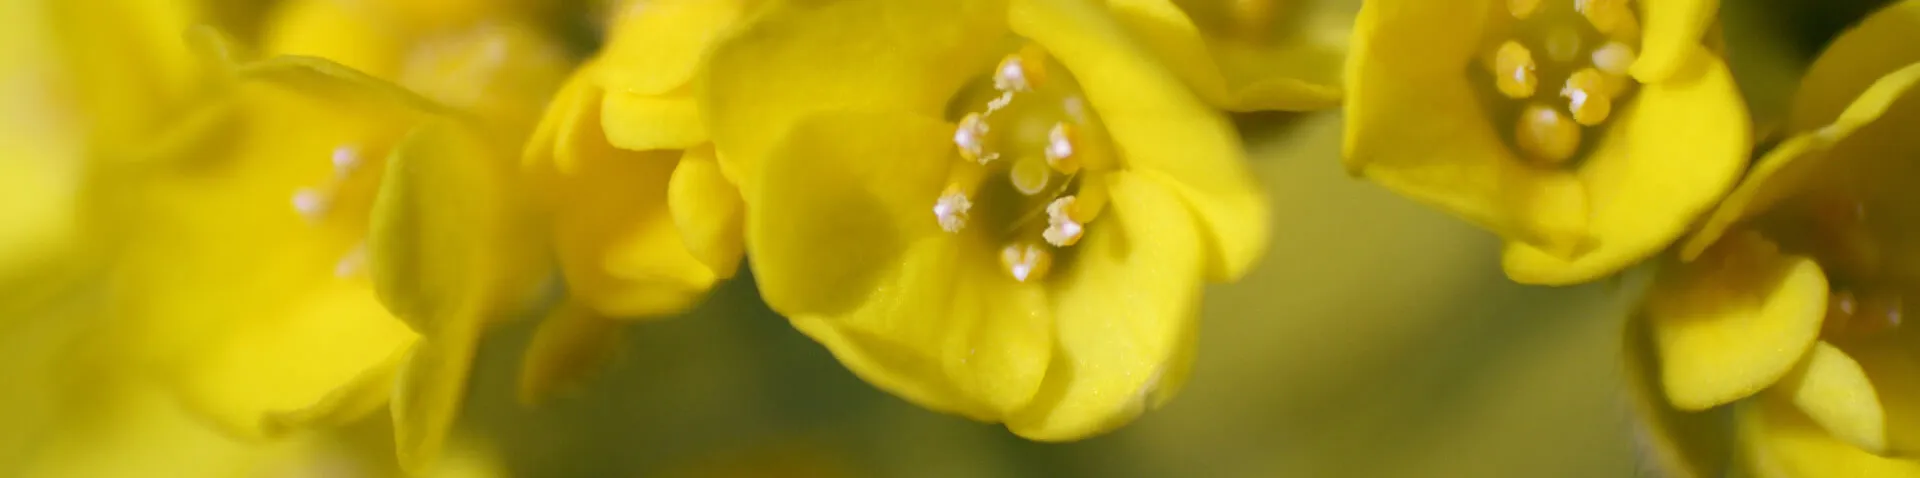 Gelbe Raps Blüten